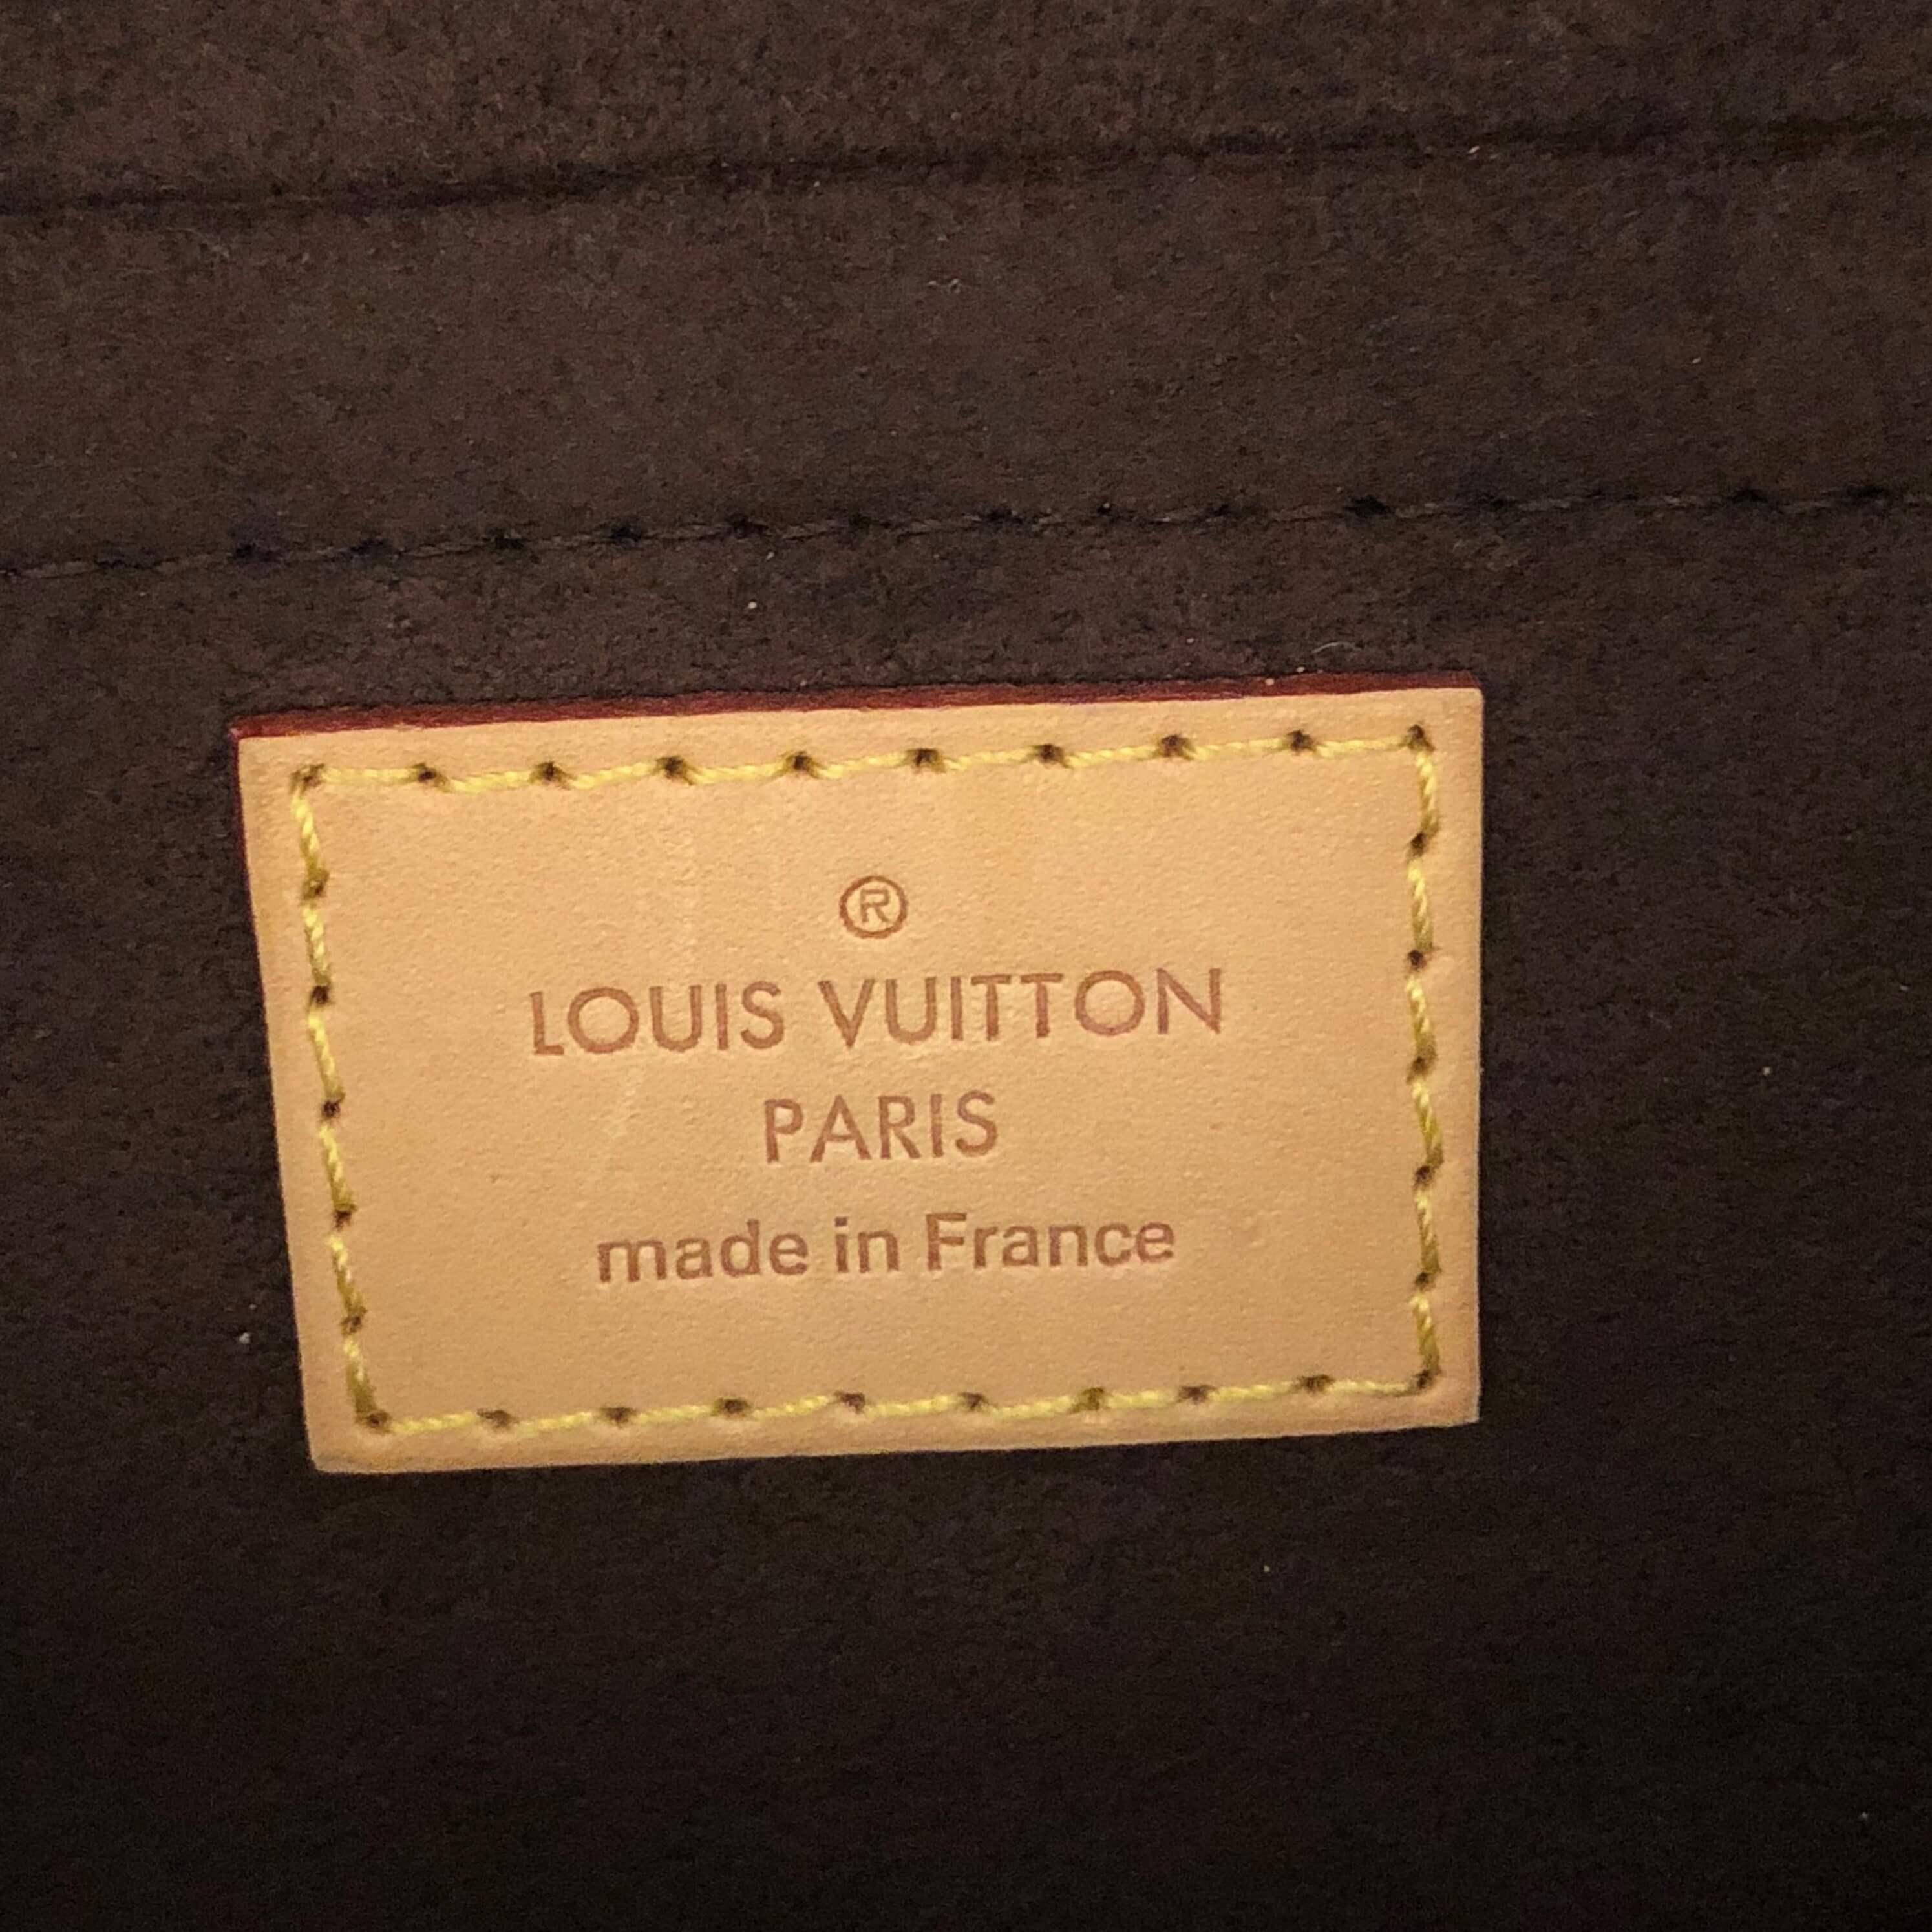 Can anyone legit check? : r/Louisvuitton